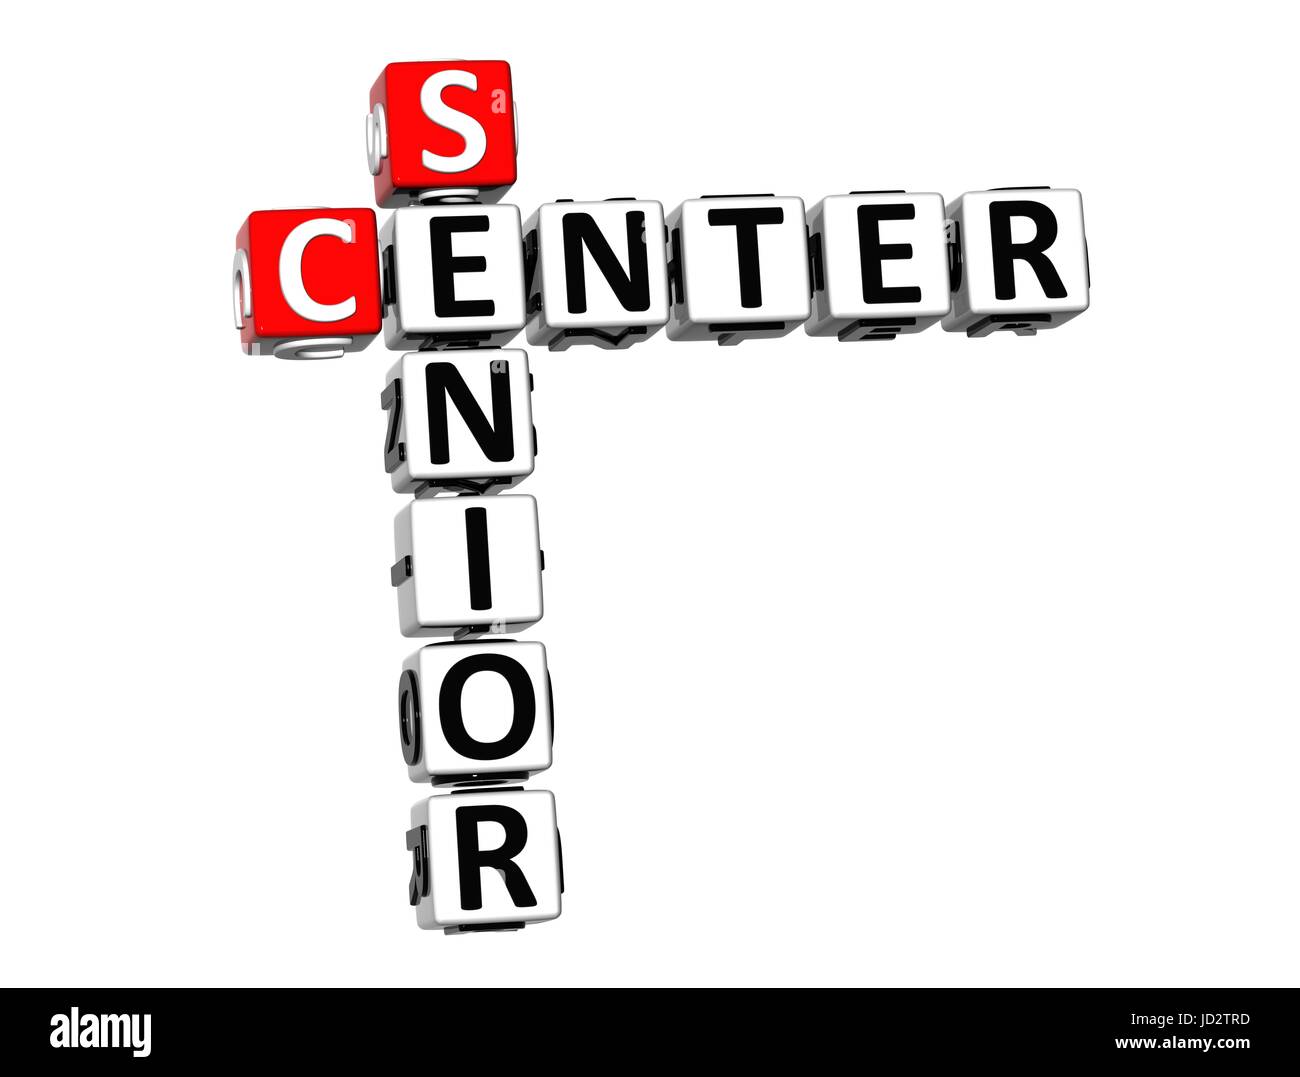 Crucigrama 3D Senior Center sobre fondo blanco. Foto de stock